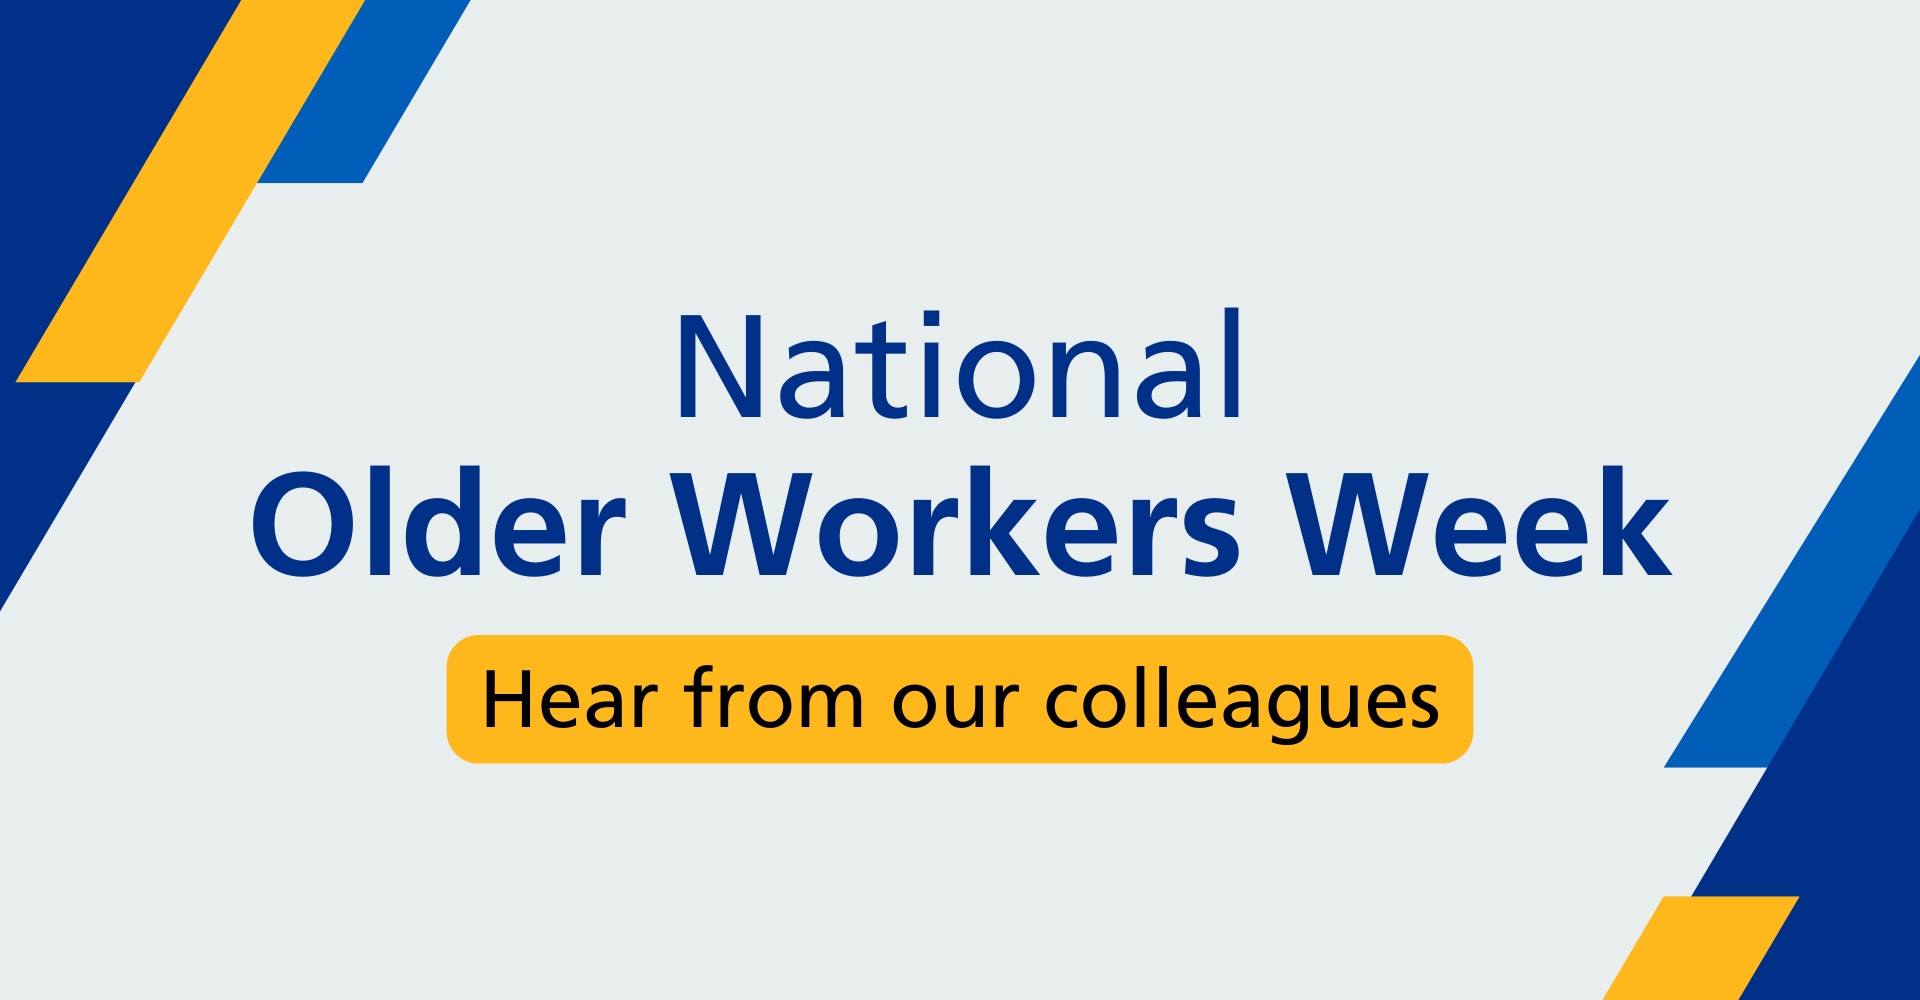 We celebrate National Older Workers Week